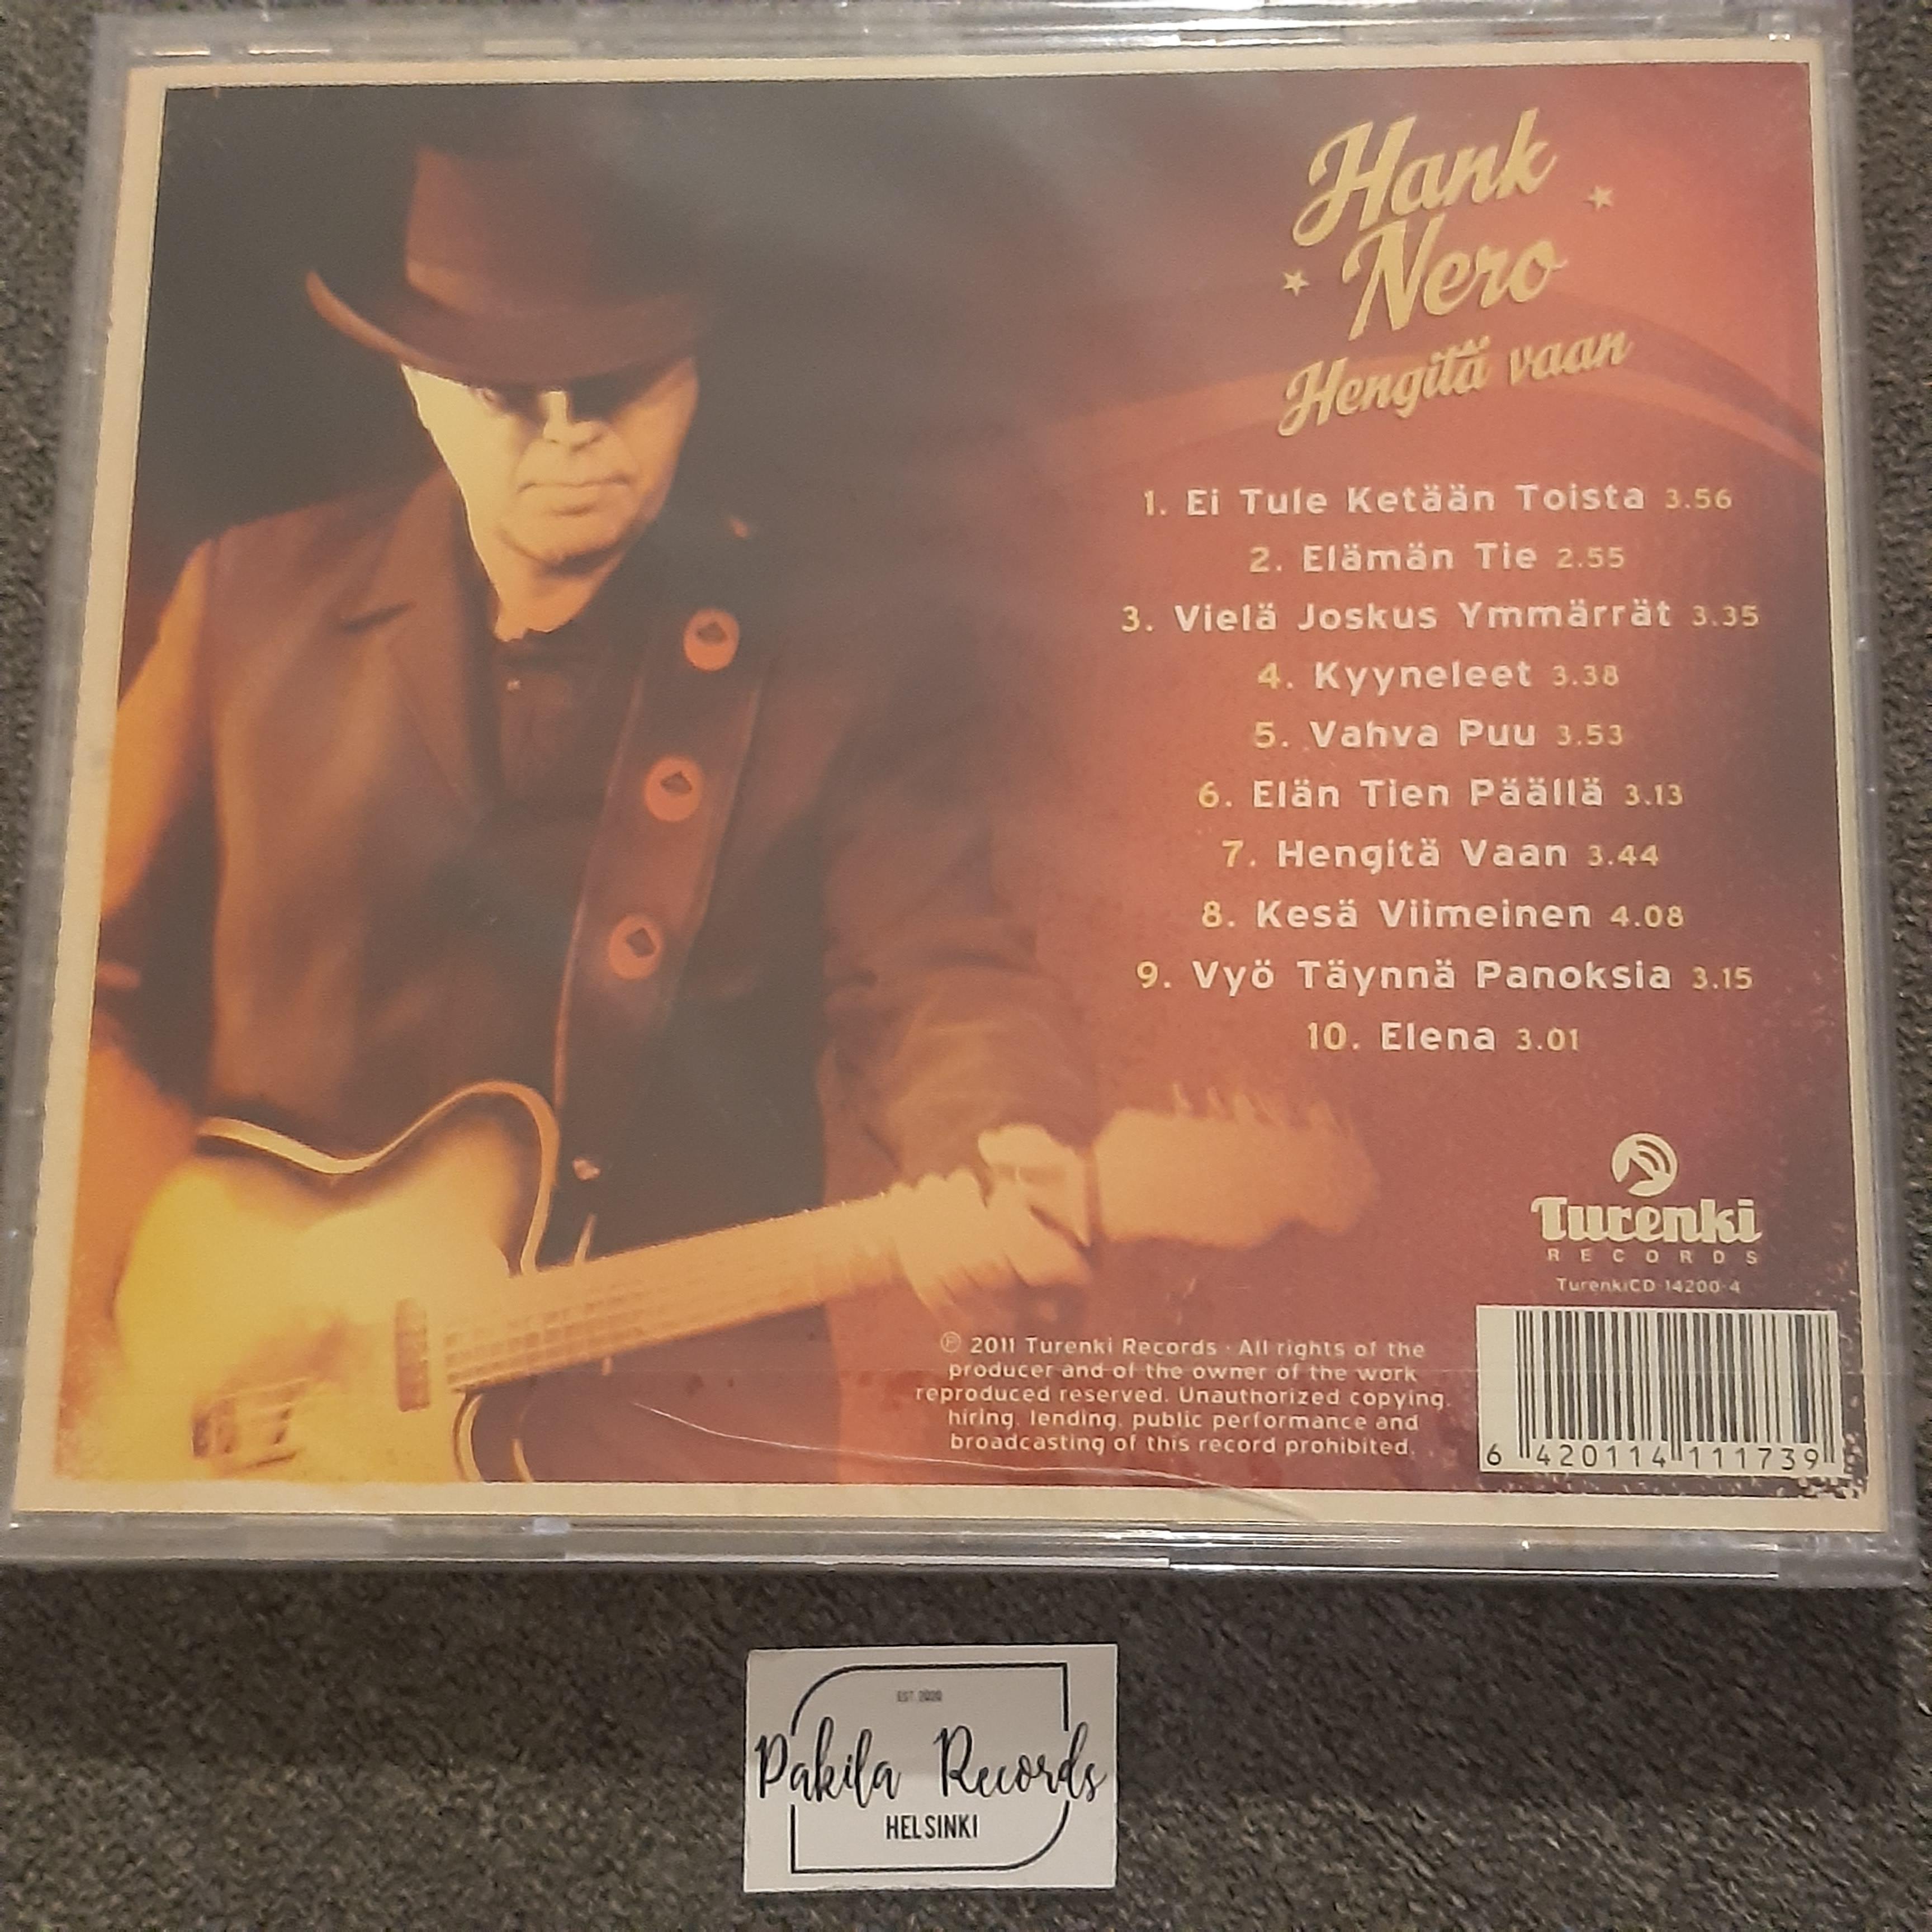 Hank Nero - Hengitä vaan - CD (käytetty)